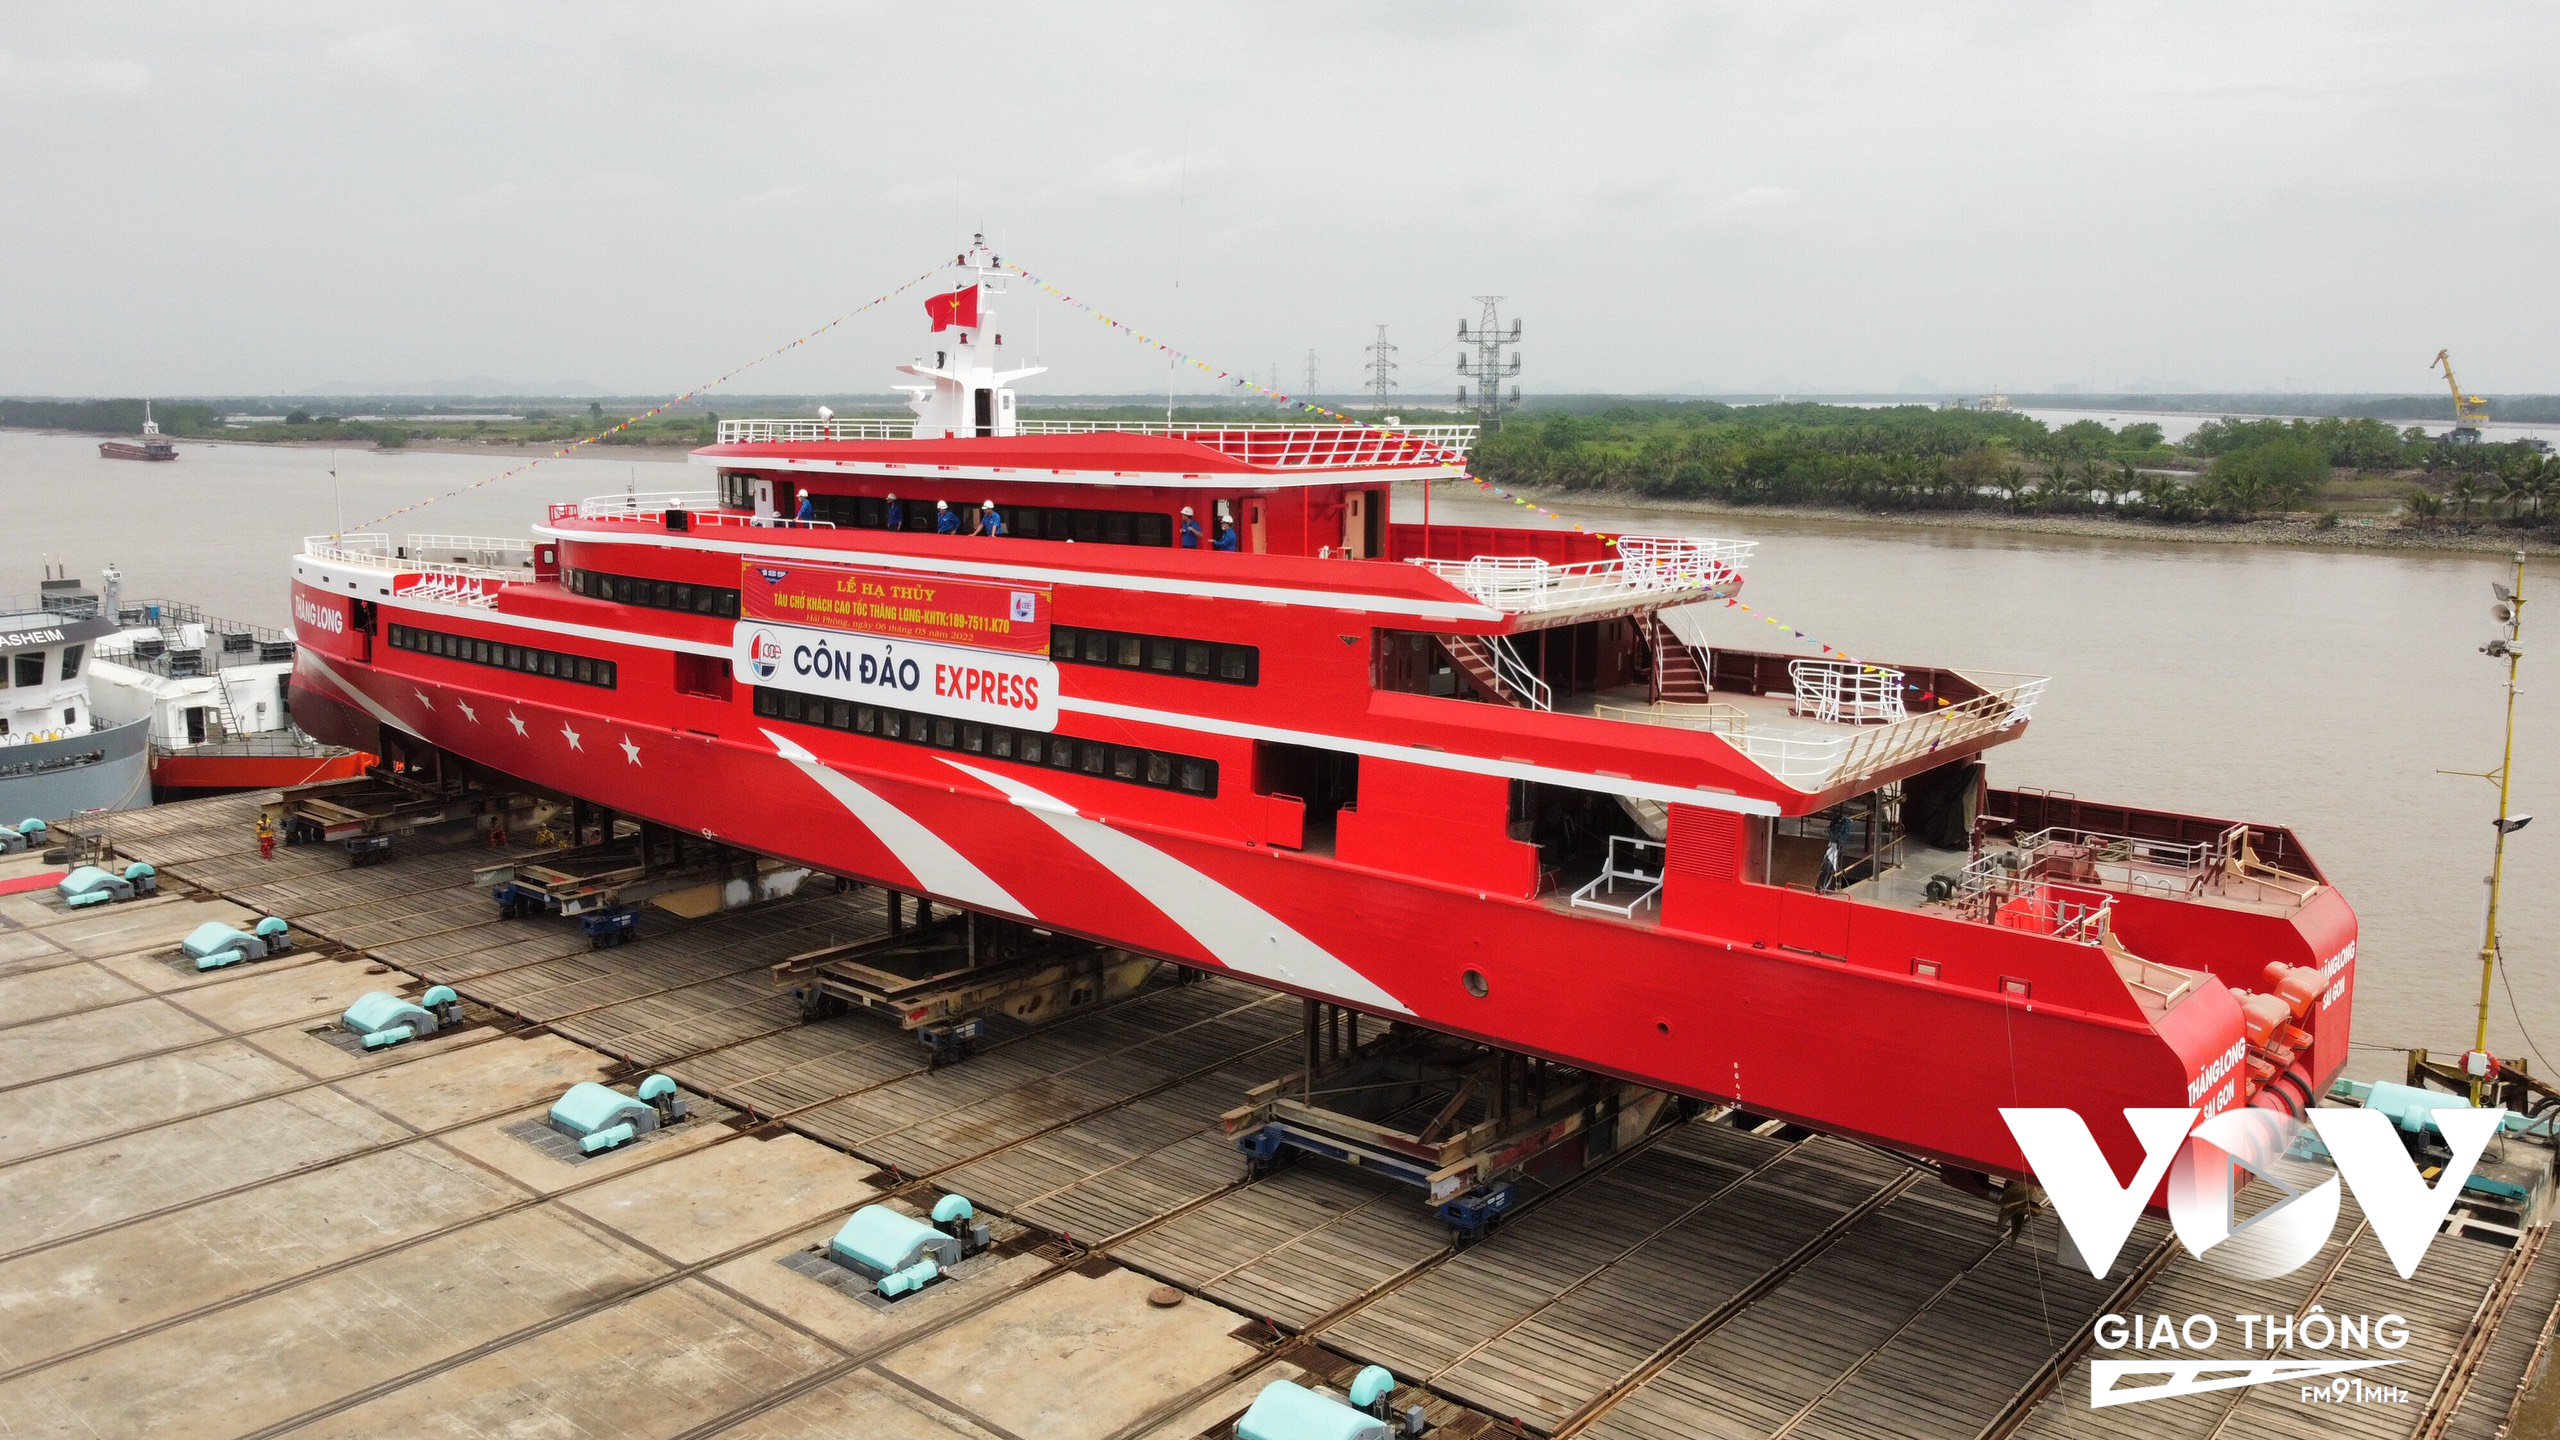 Dự kiến siêu tàu cao tốc Thăng Long sẽ có chuyến vận hành chở khách chính thức từ tháng 6/2022 trên hải trình Vũng Tàu – Côn Đảo